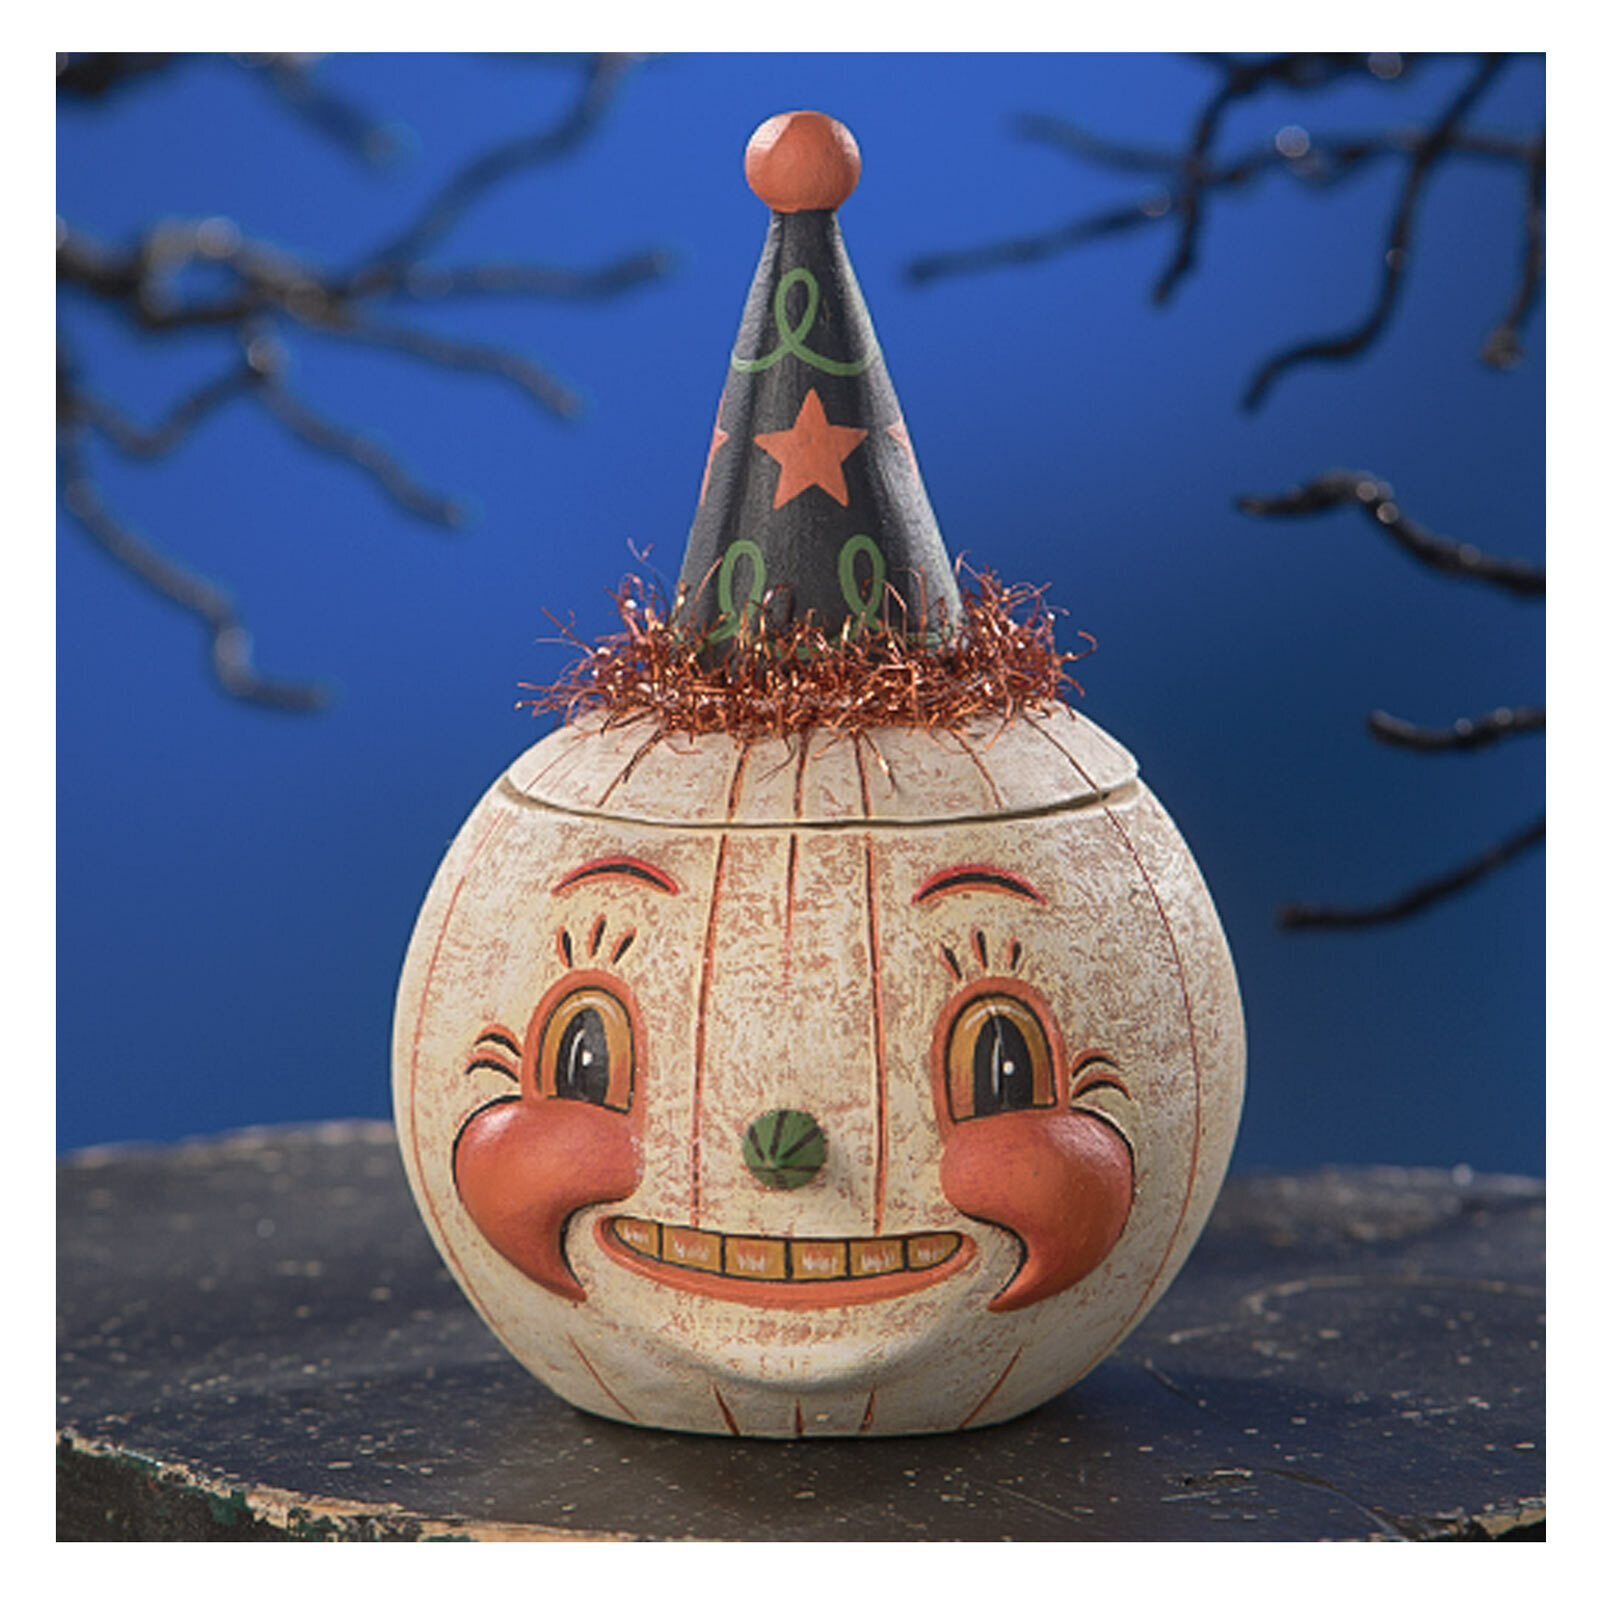 Johanna Parker Bethany Lowe Jackie White-O-Ween JOL Halloween Figure Jar Decor